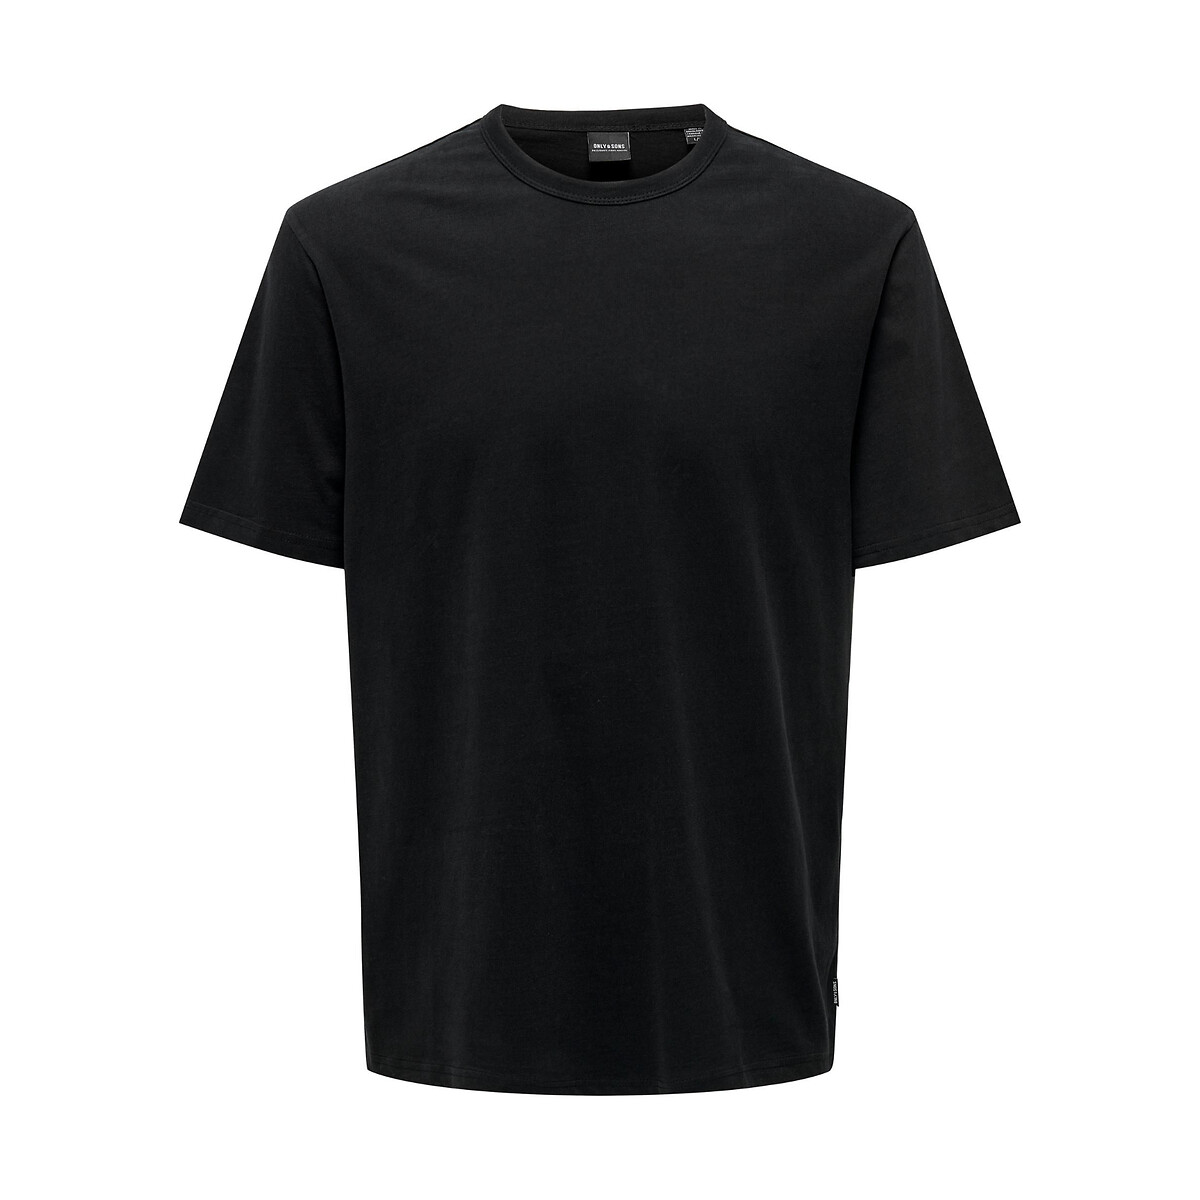 Футболка с круглым вырезом прямого покроя Mart XS черный футболка прямого покроя reeta xs белый